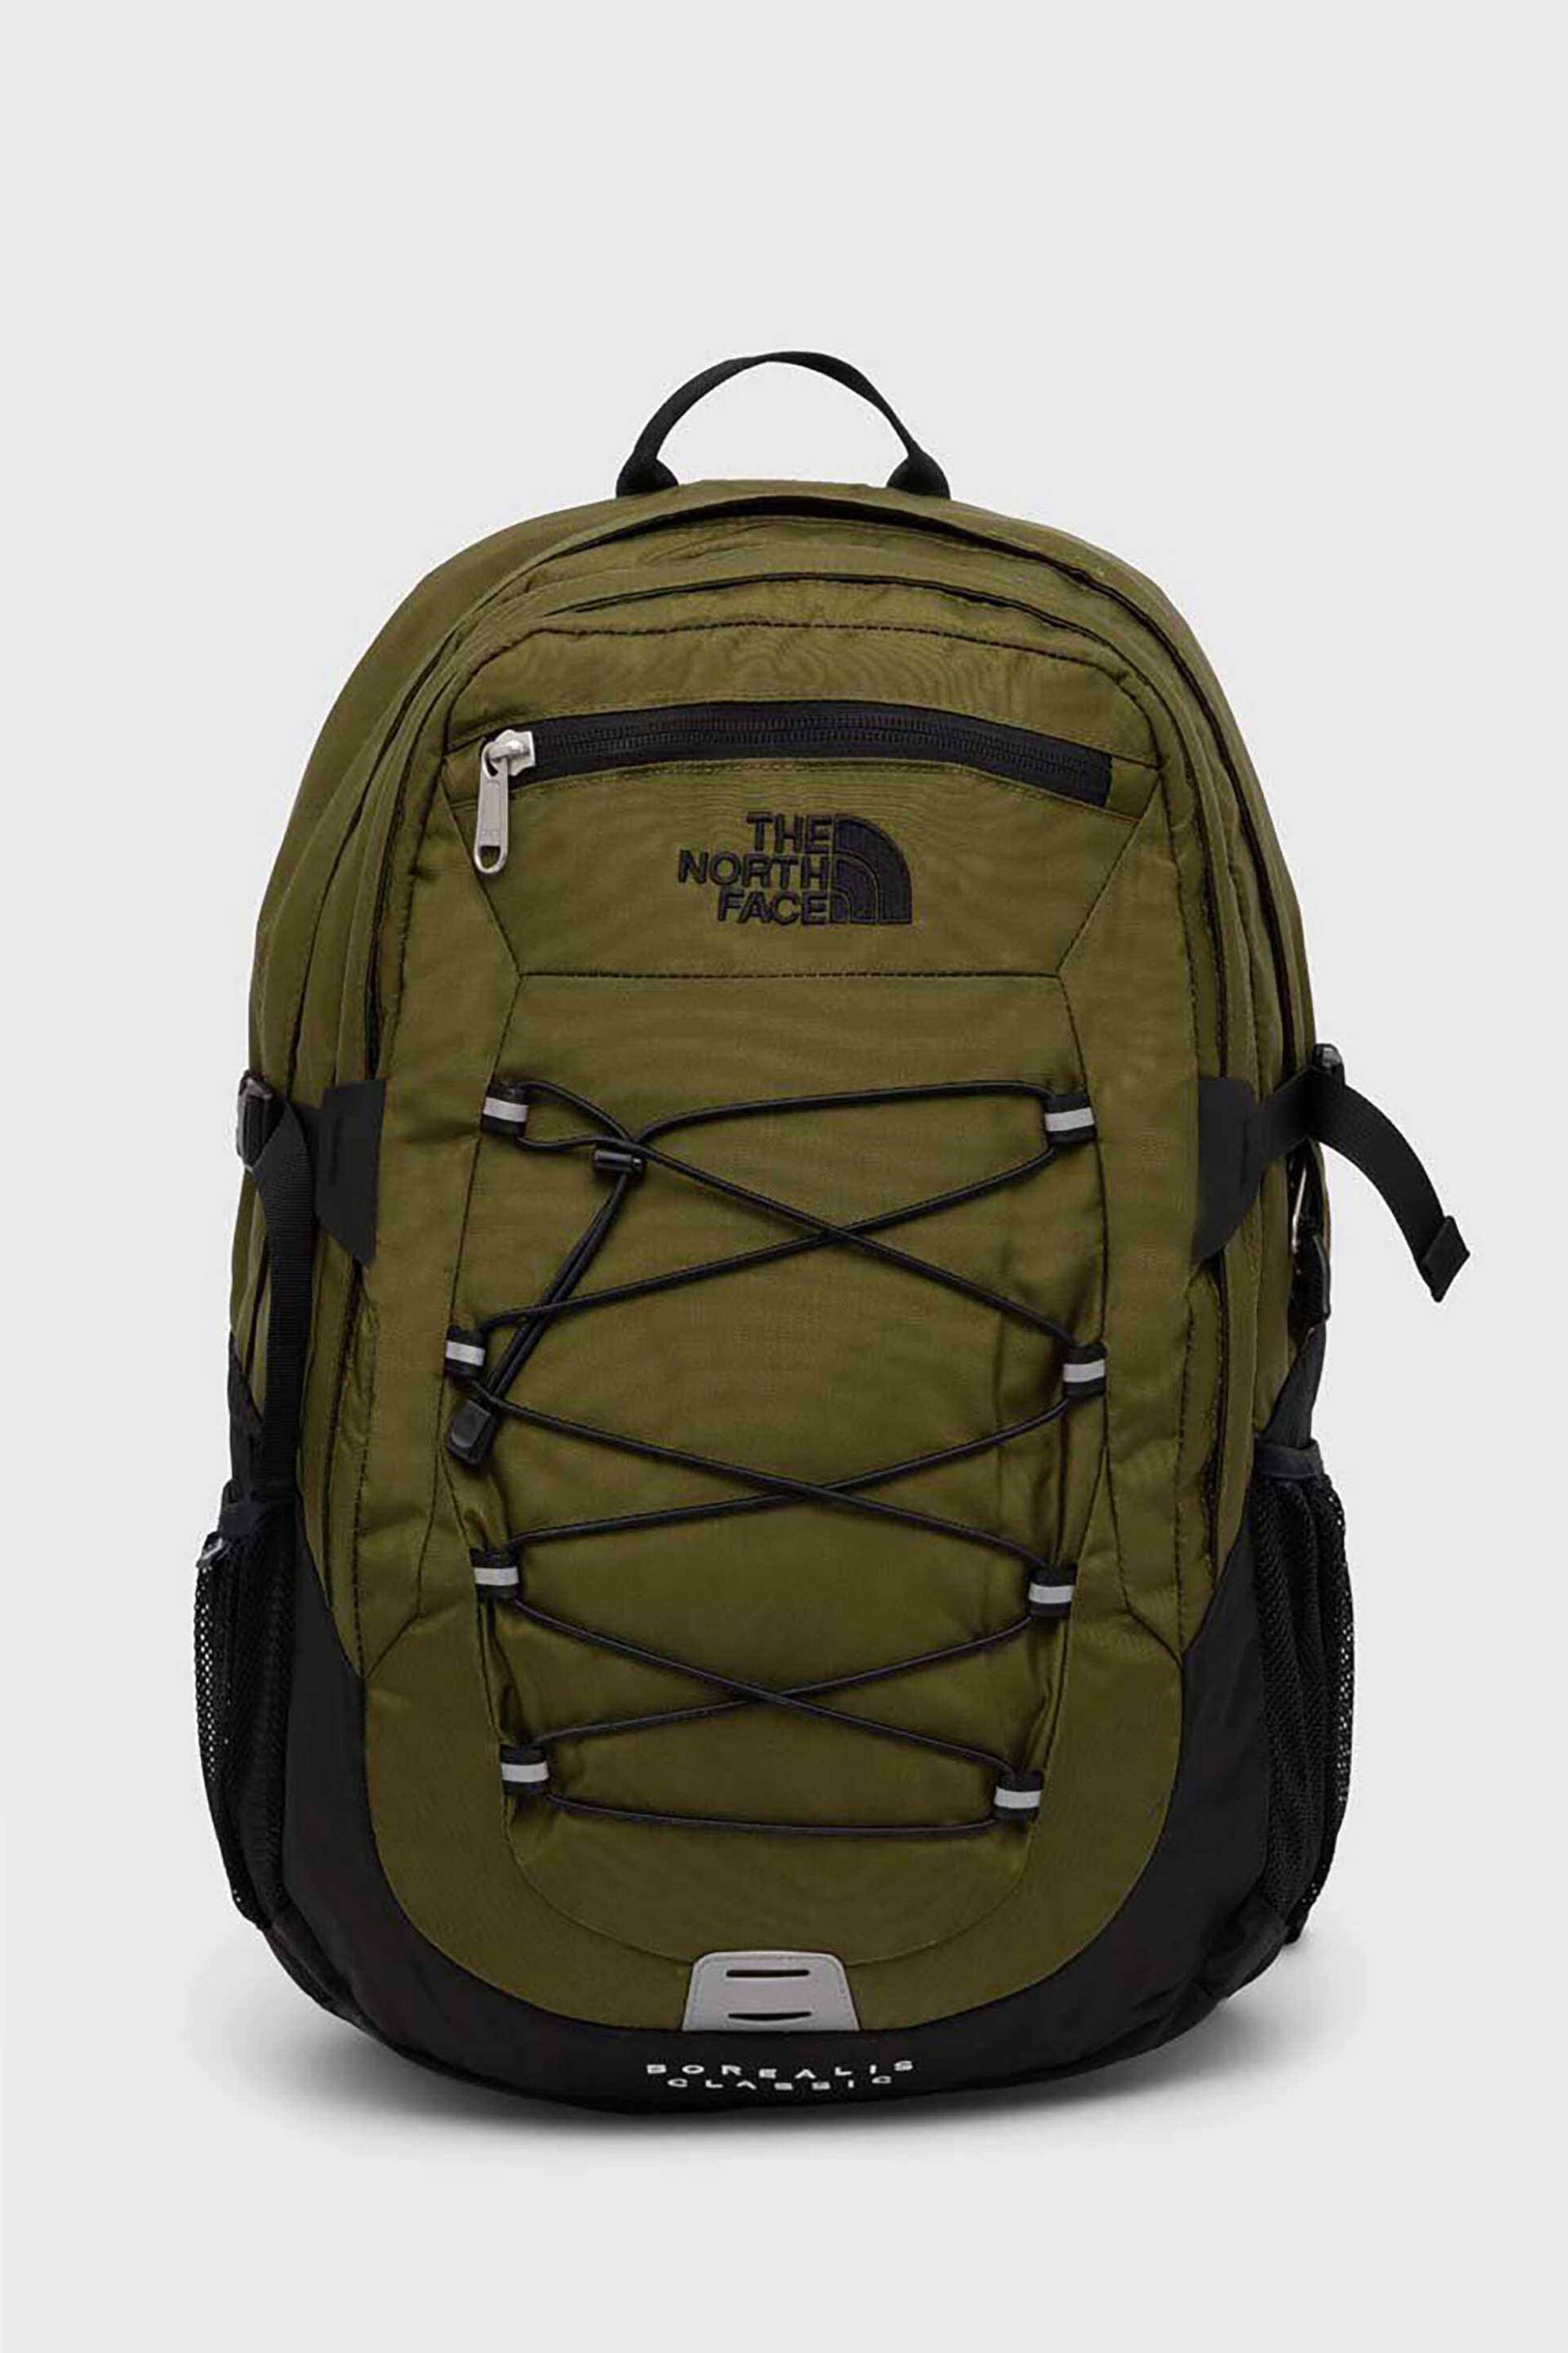 Ανδρική Μόδα > Ανδρικές Τσάντες > Ανδρικά Σακίδια & Backpacks The North Face unisex backpack δίχρωμο με κεντημένο contrast λογότυπο "Borealis Classic" - NF00CF9CRMO1 Λαδί